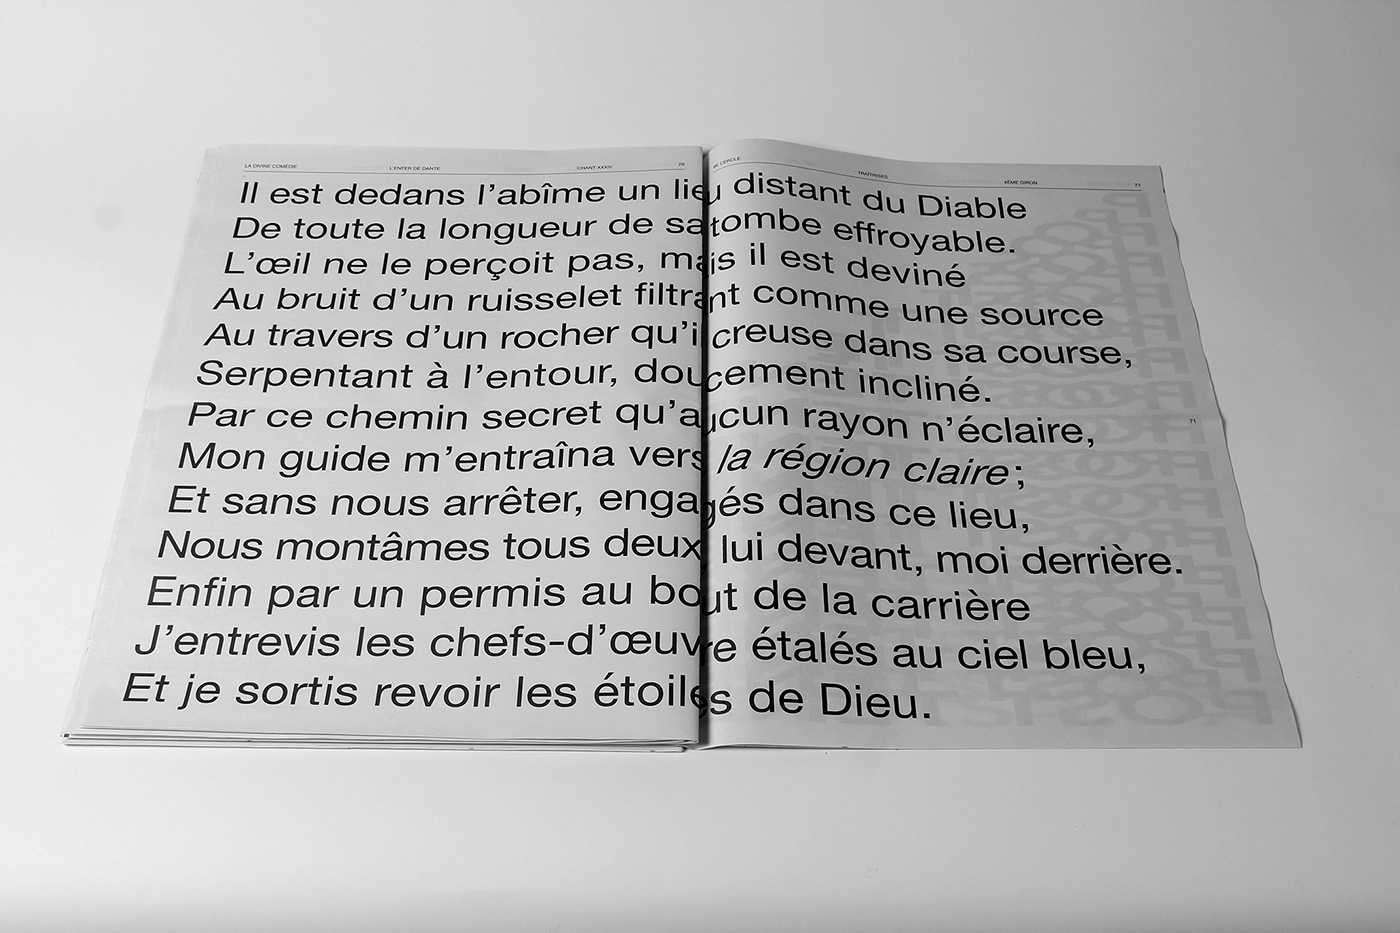 newspaper journal geneve Geneva graphic design la divine comédie L'enfer de Dante typo Typographie cfpaa diplôme graphisme edition